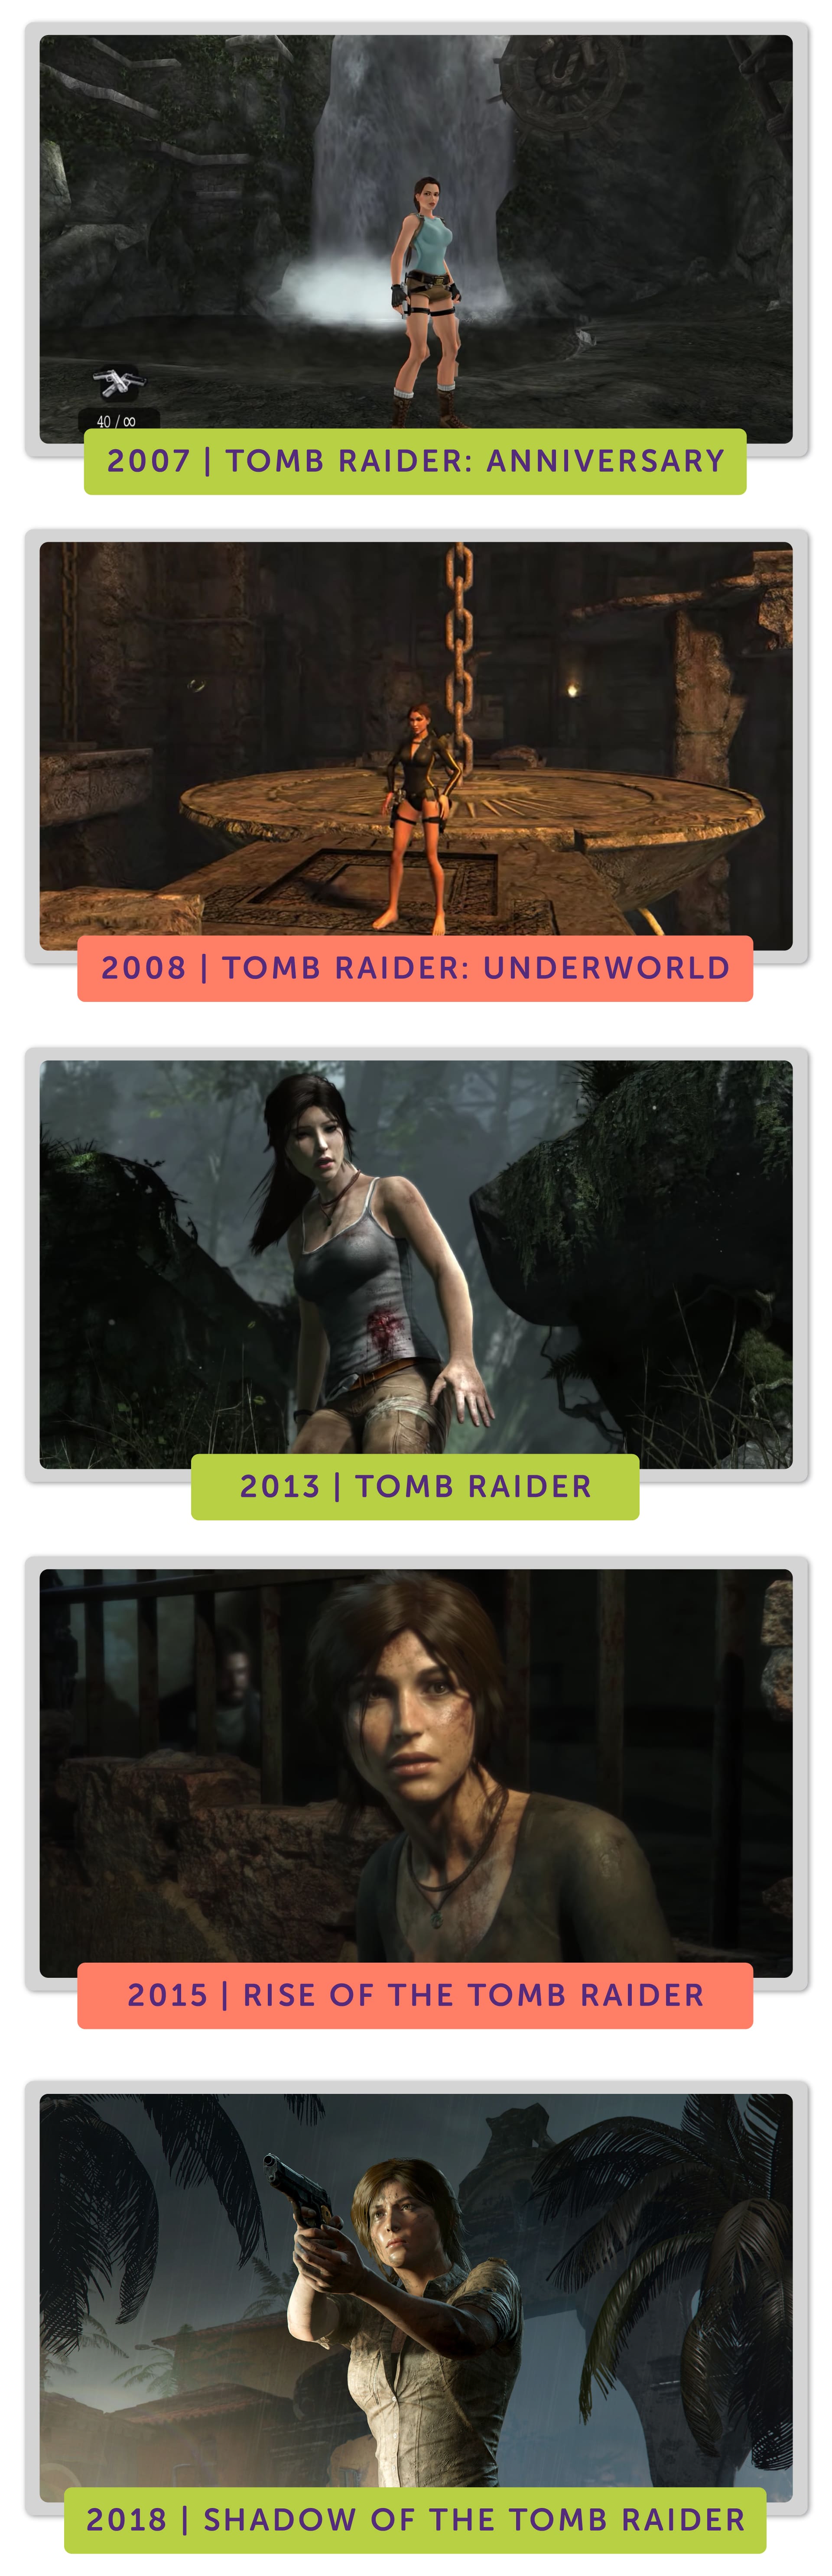 Blu-Ray - Tomb Raider: A Origem da Vida em Promoção na Americanas